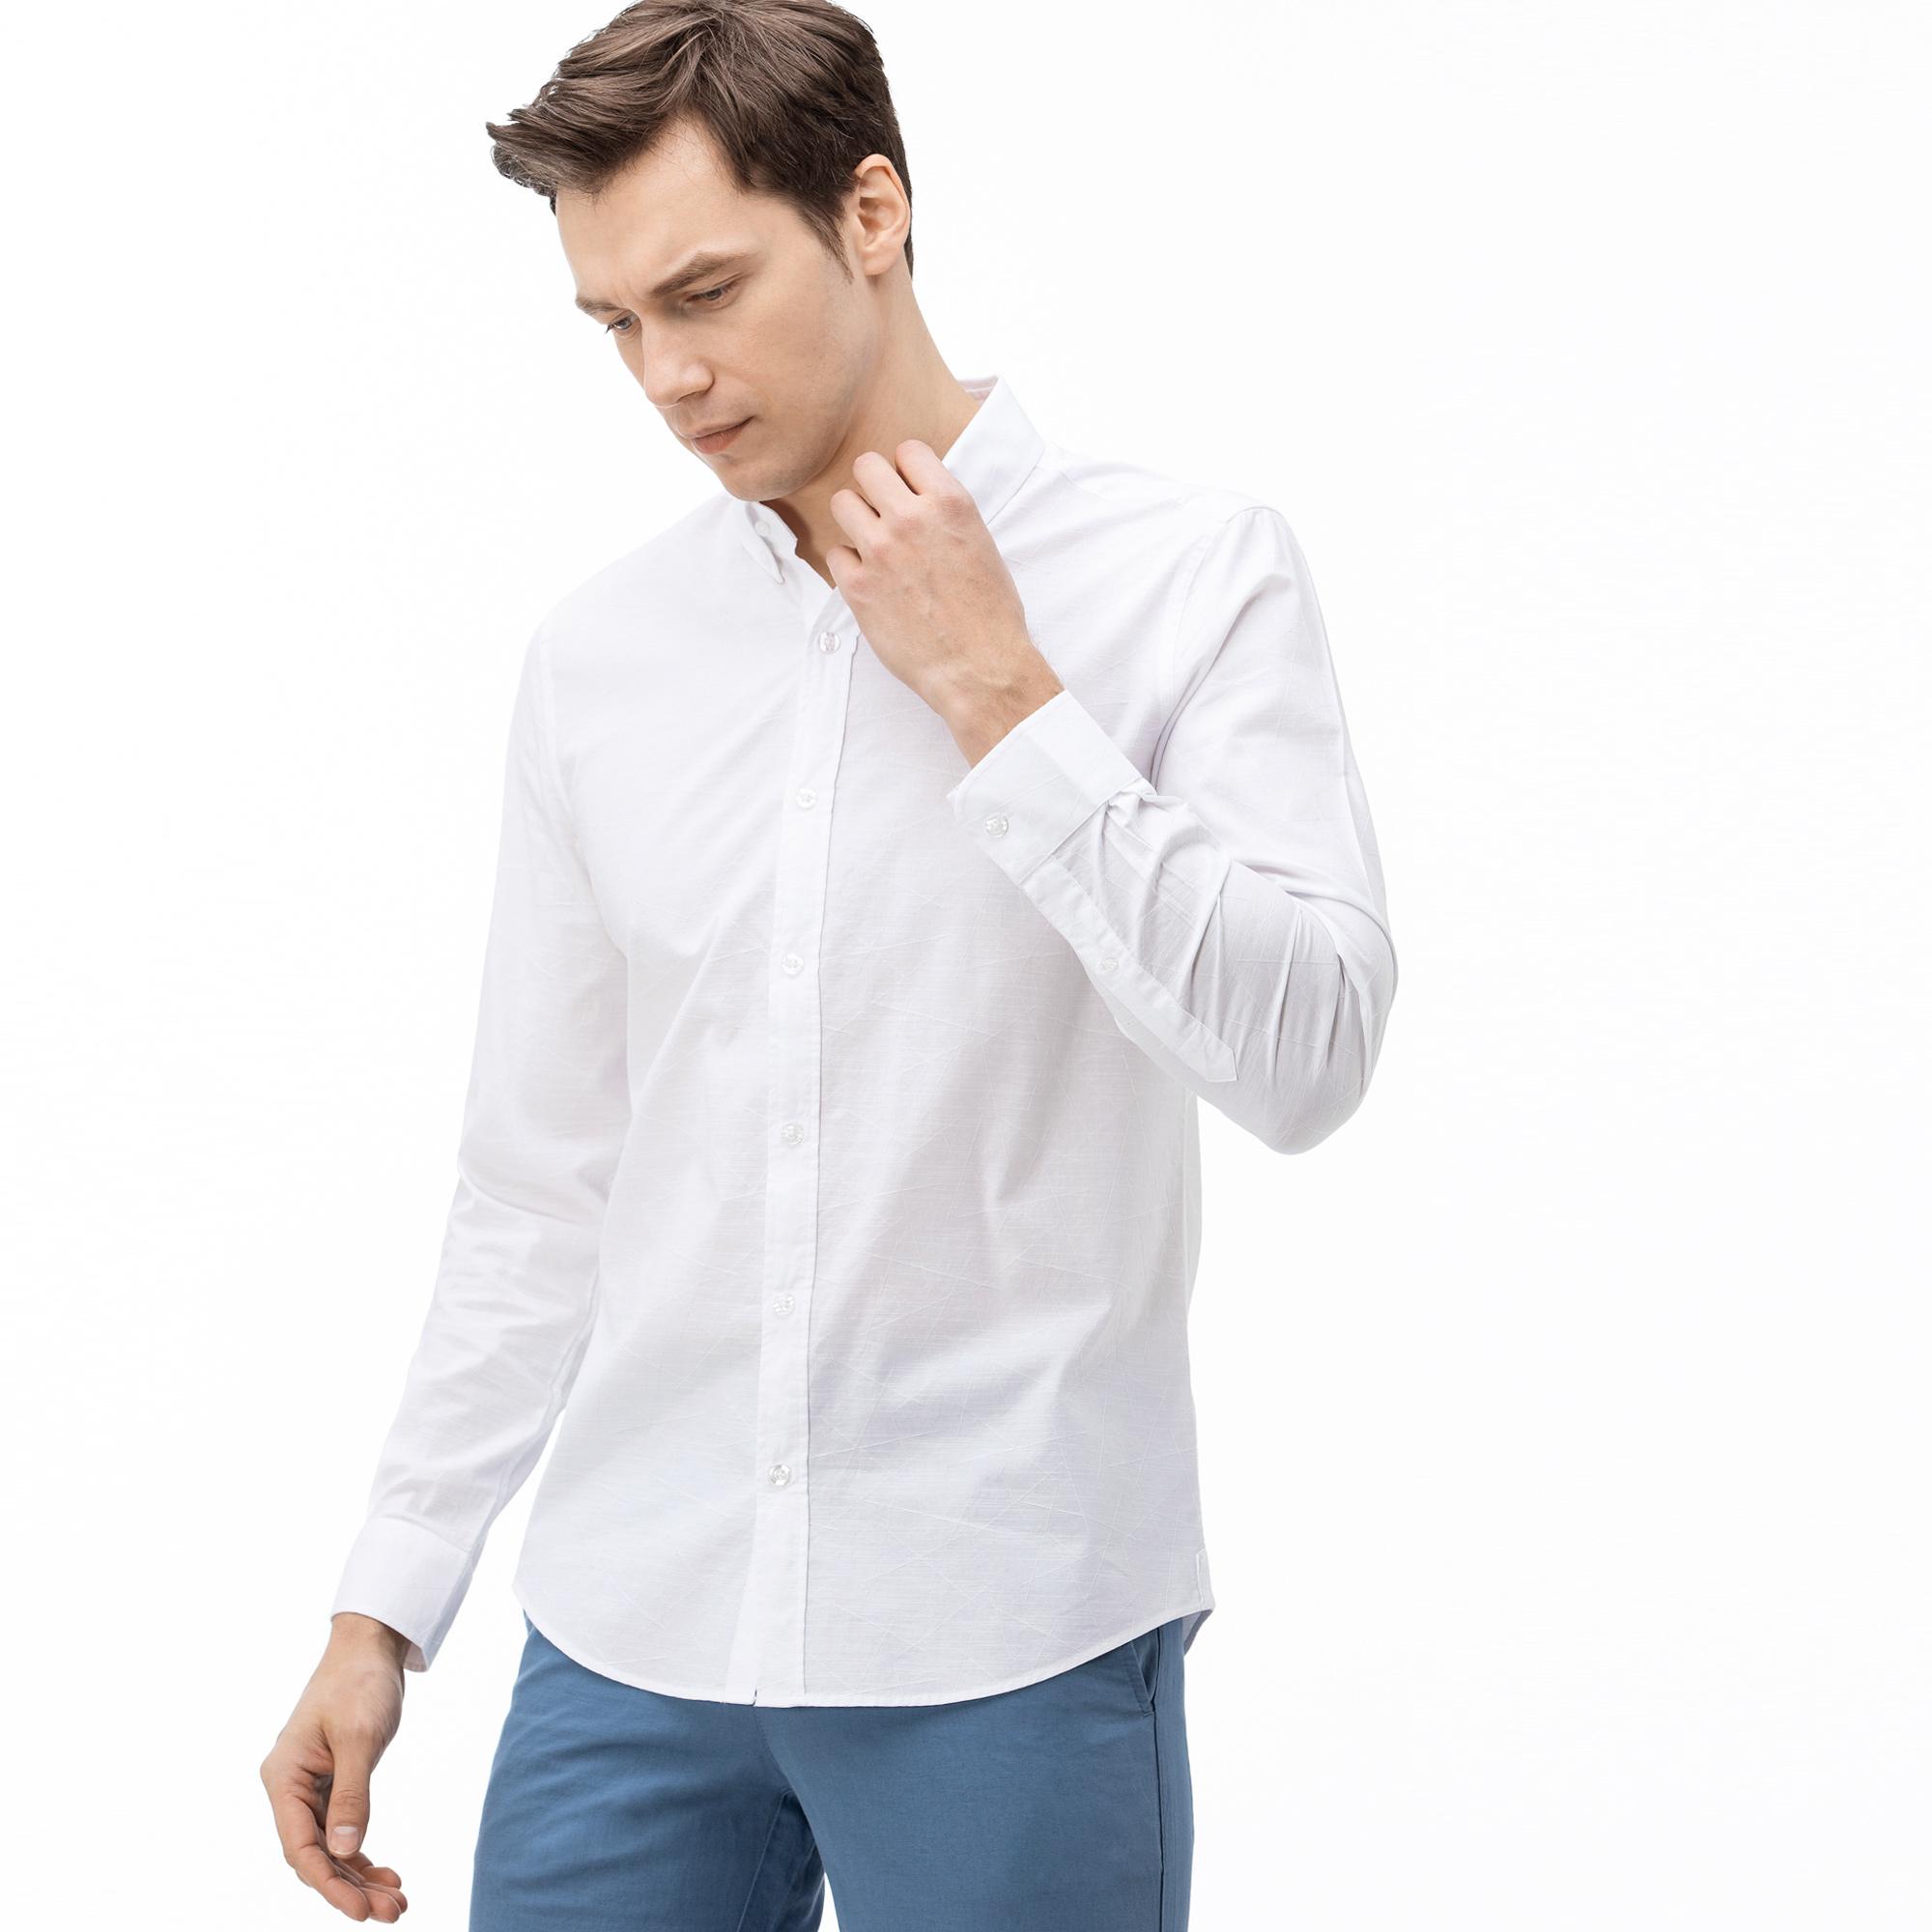 Lacoste Erkek Slim Fit Düğmeli Yaka Desenli Beyaz Gömlek. 4